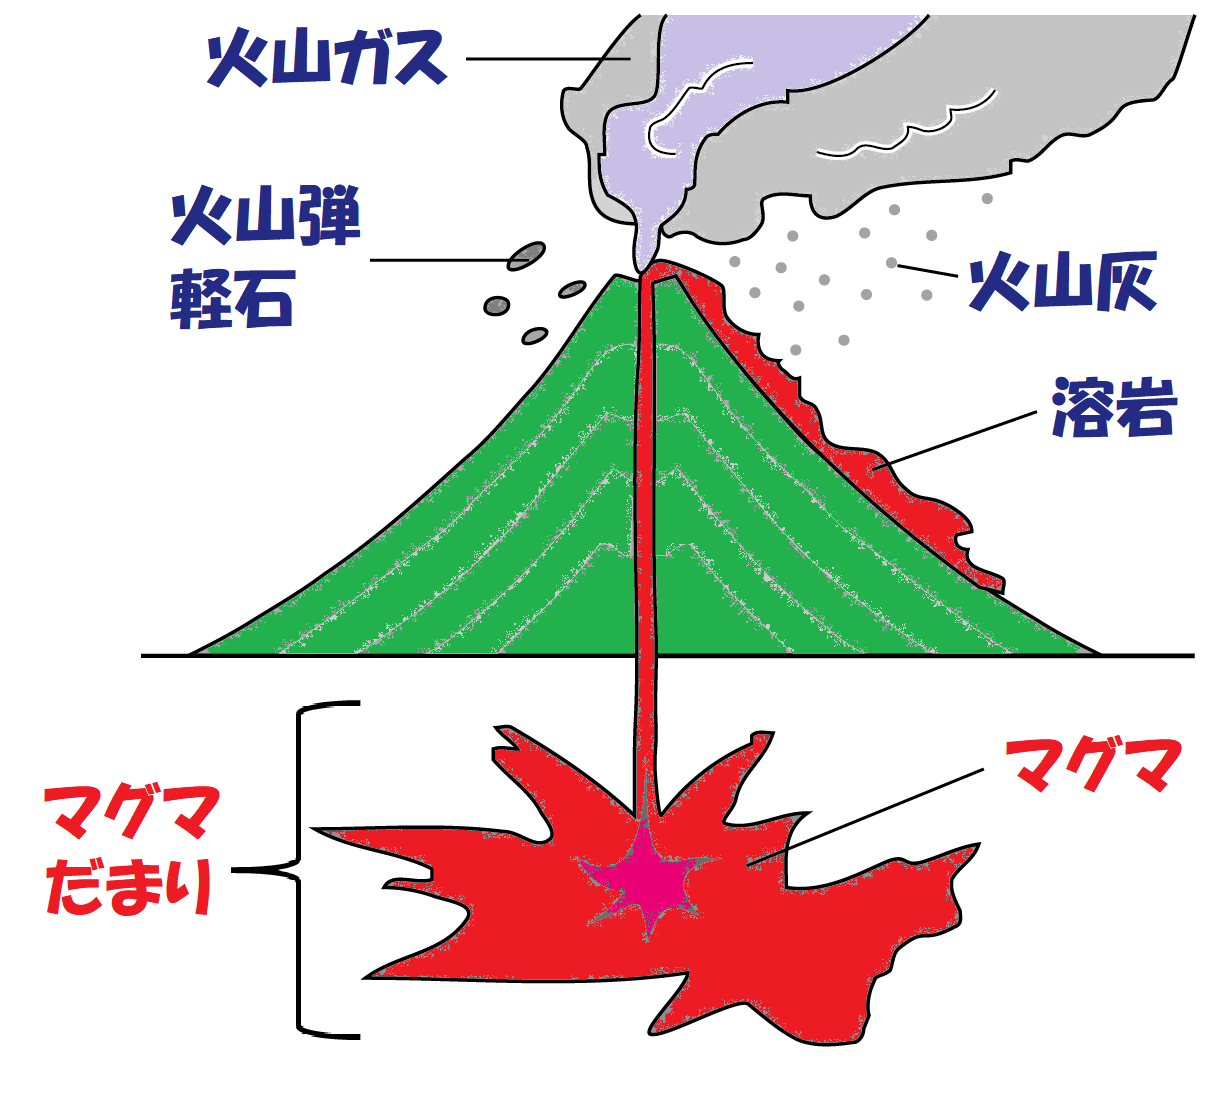 火山 の 精算 アイテム